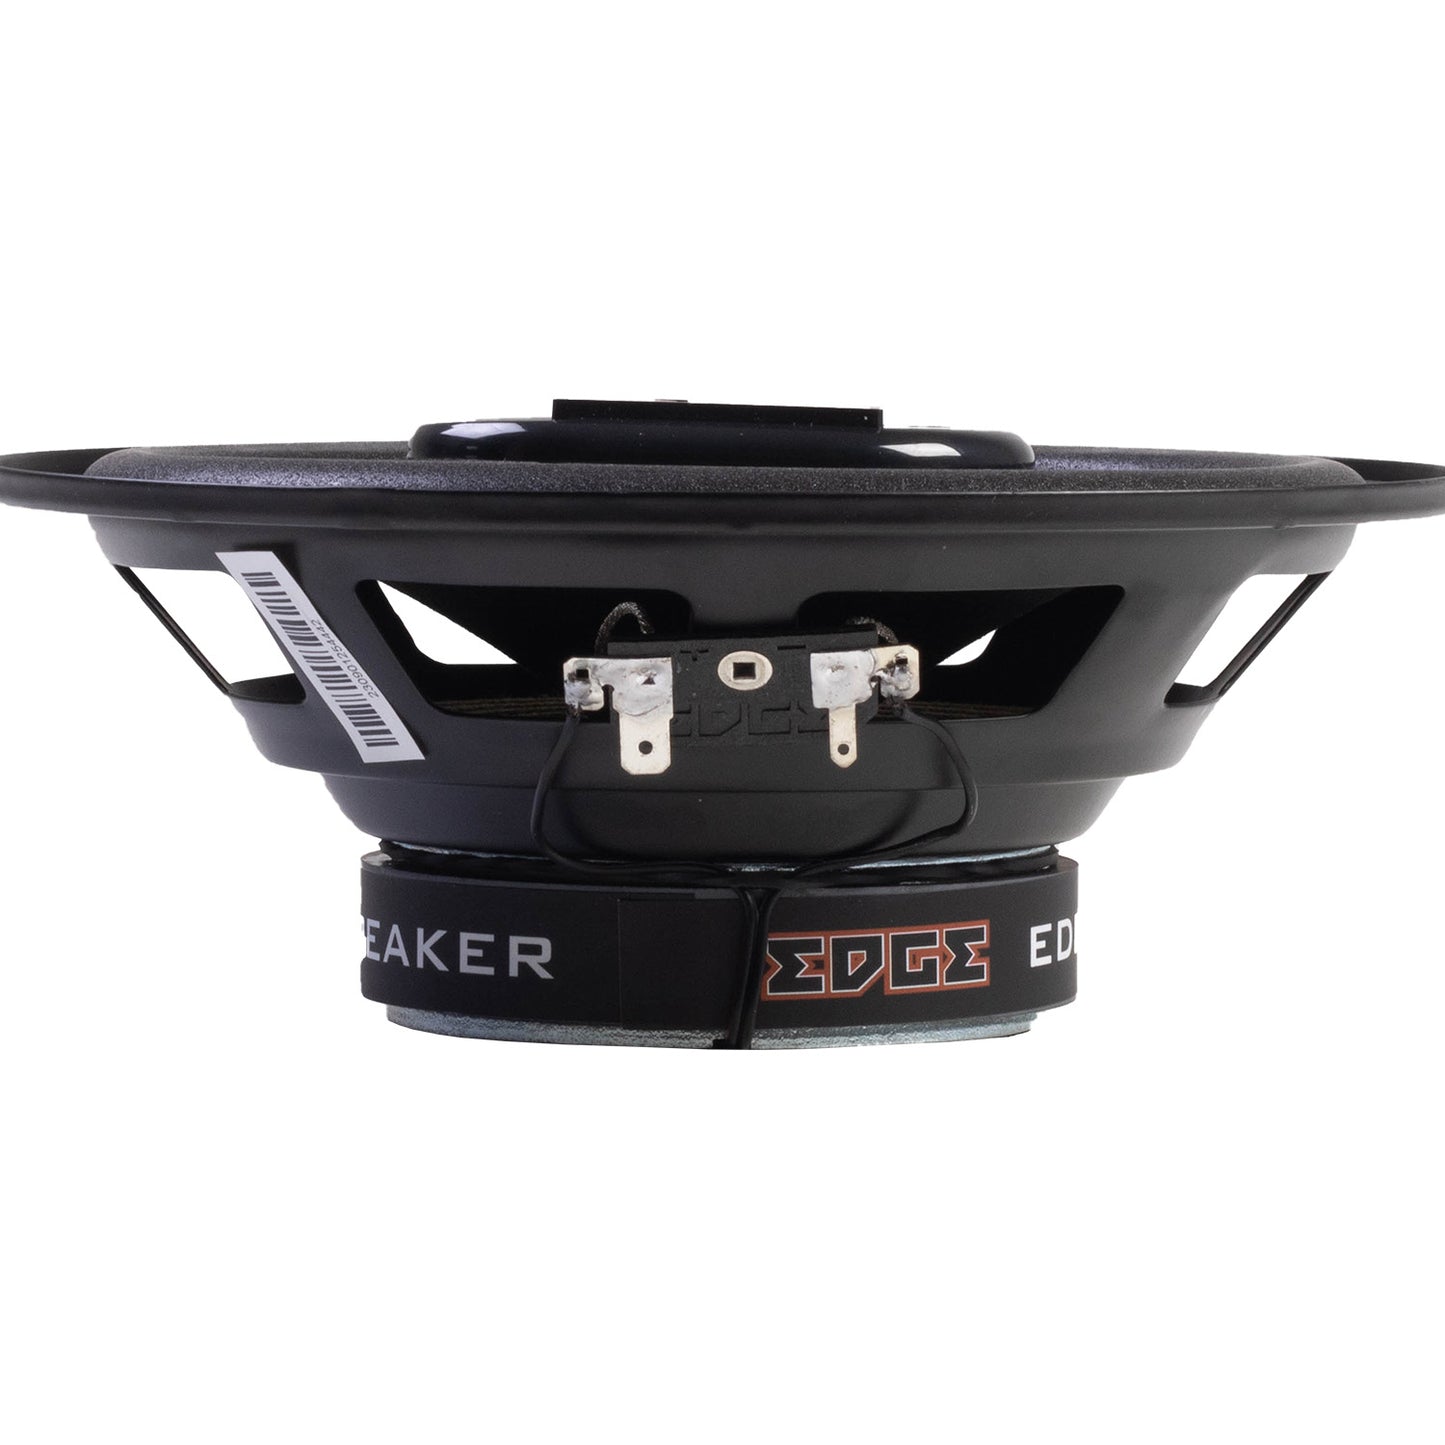 EDBX6-E1 | EDGE DBX Series 6.5 inch 180 watts Coaxial Speakers - Pair